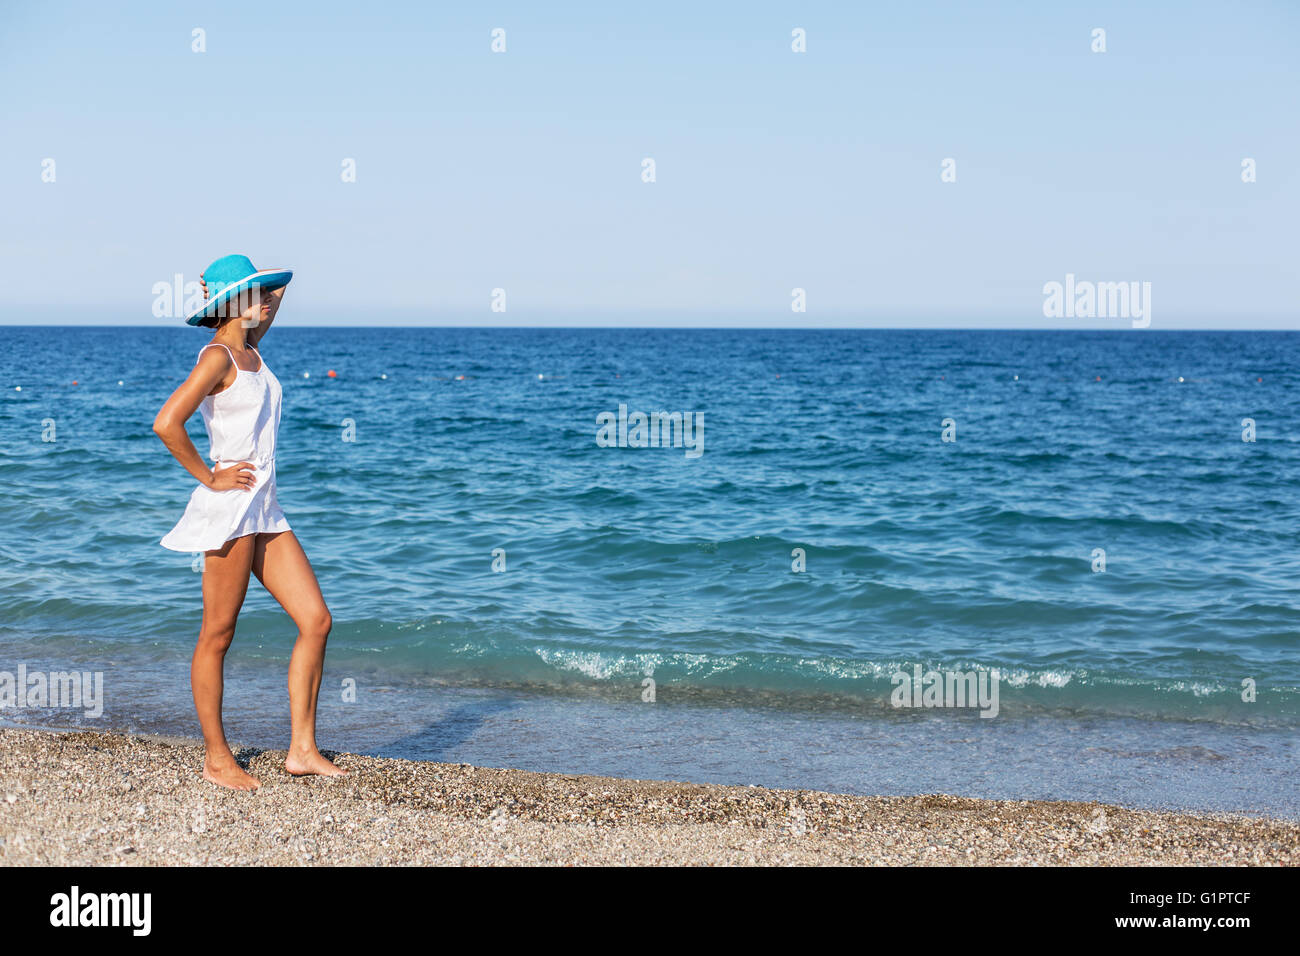 La femme est sur la plage près du bord de l'eau. Banque D'Images